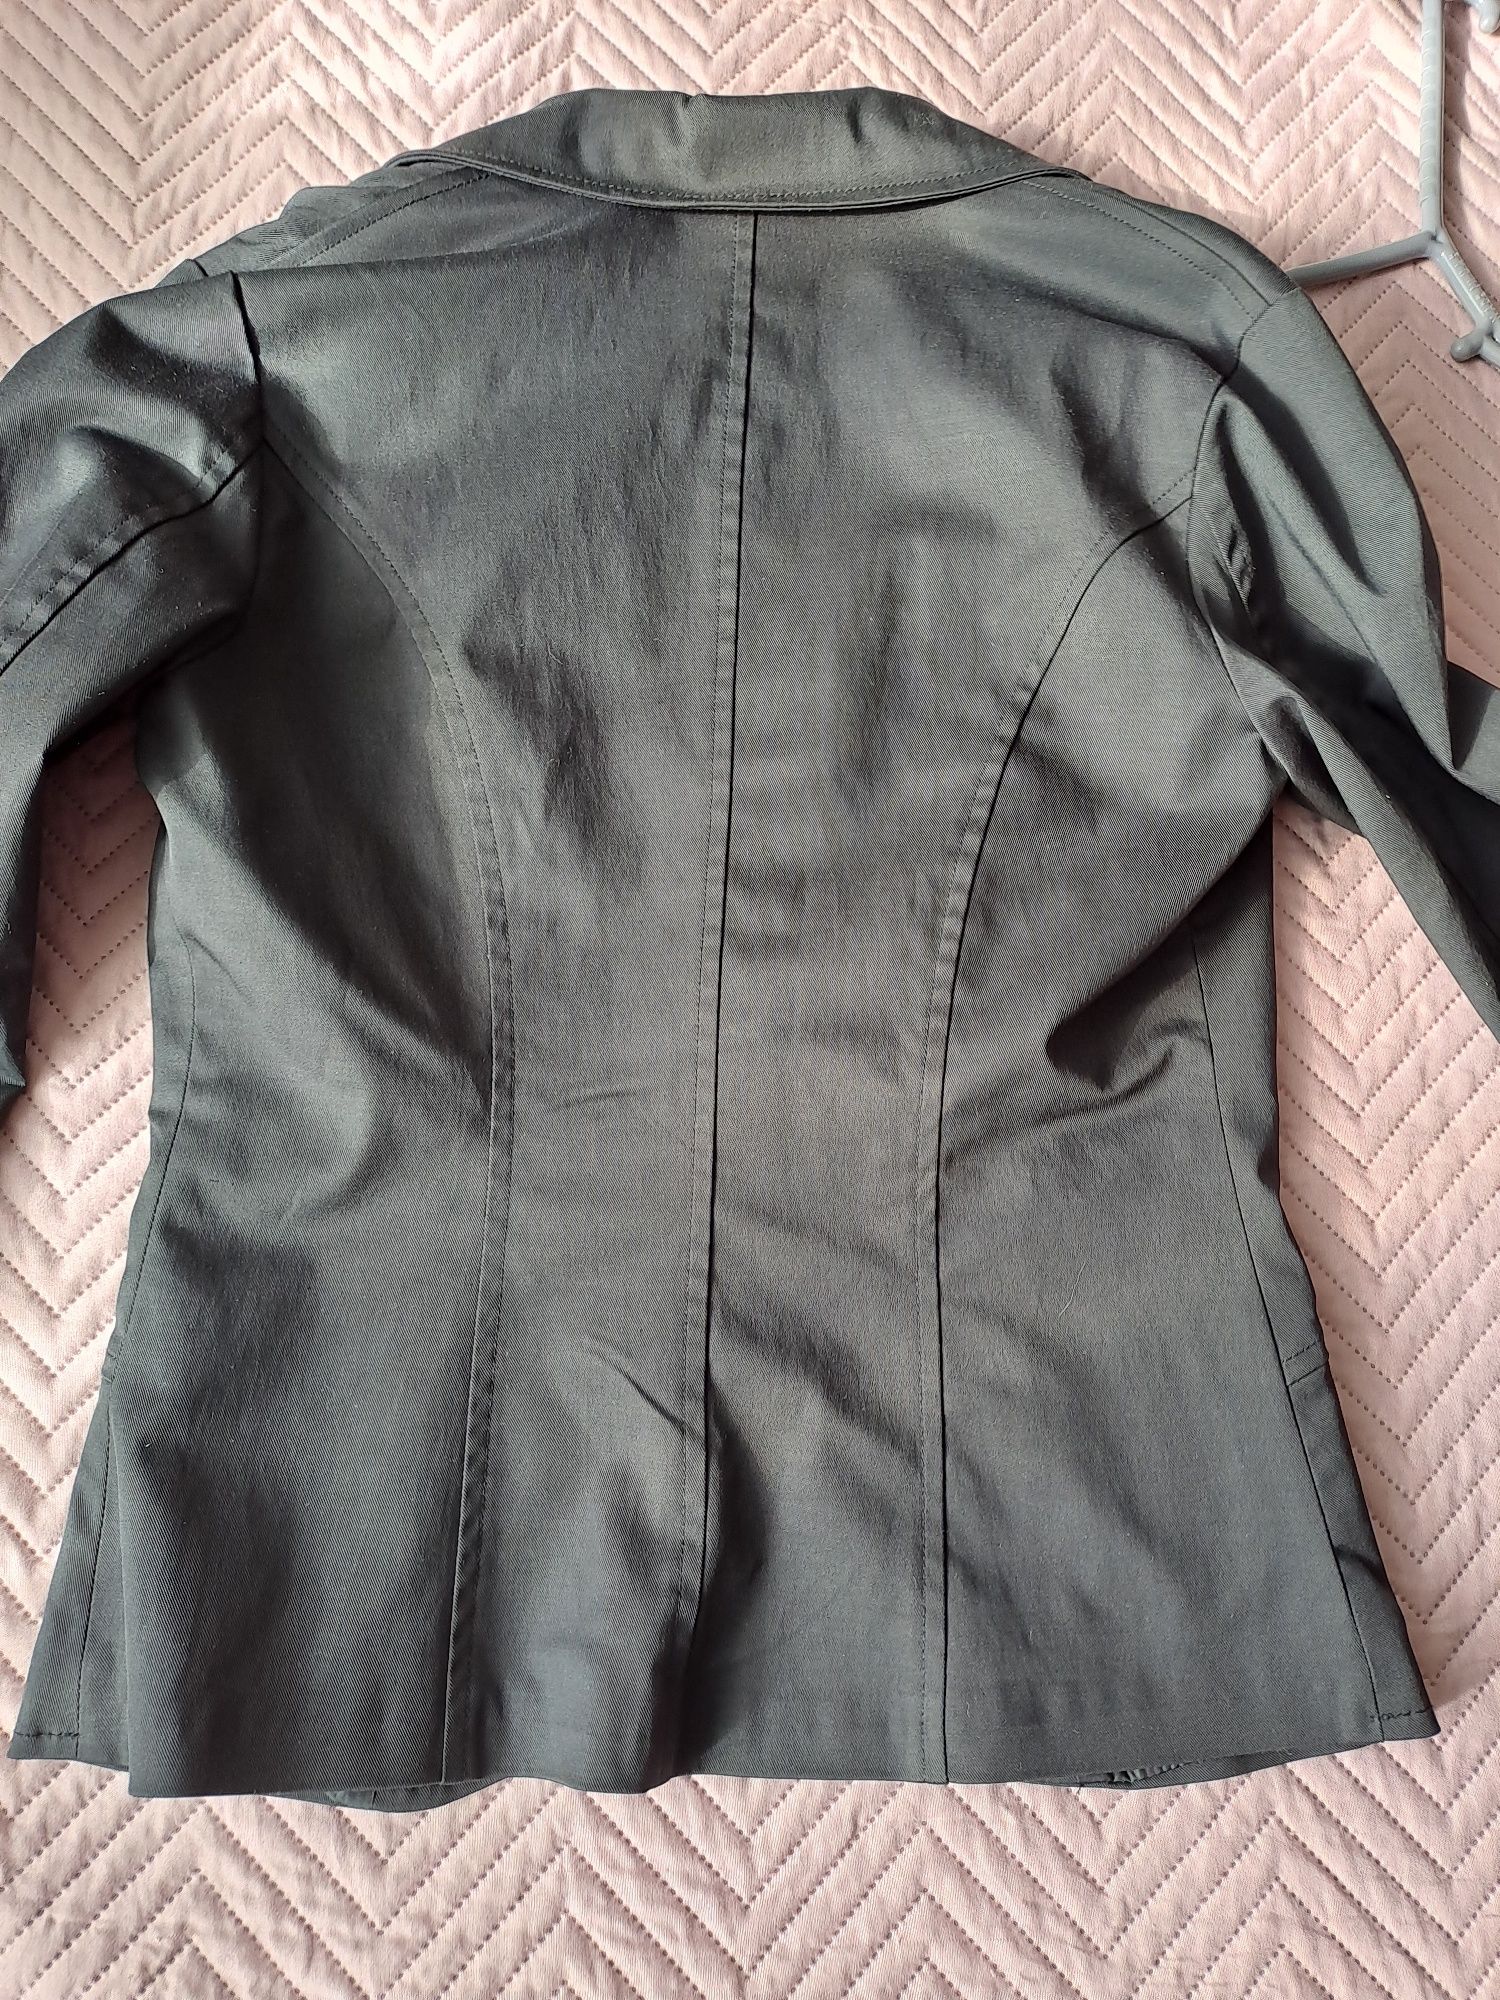 Официално дамско сако,черно на цвят,ново без забелележки.